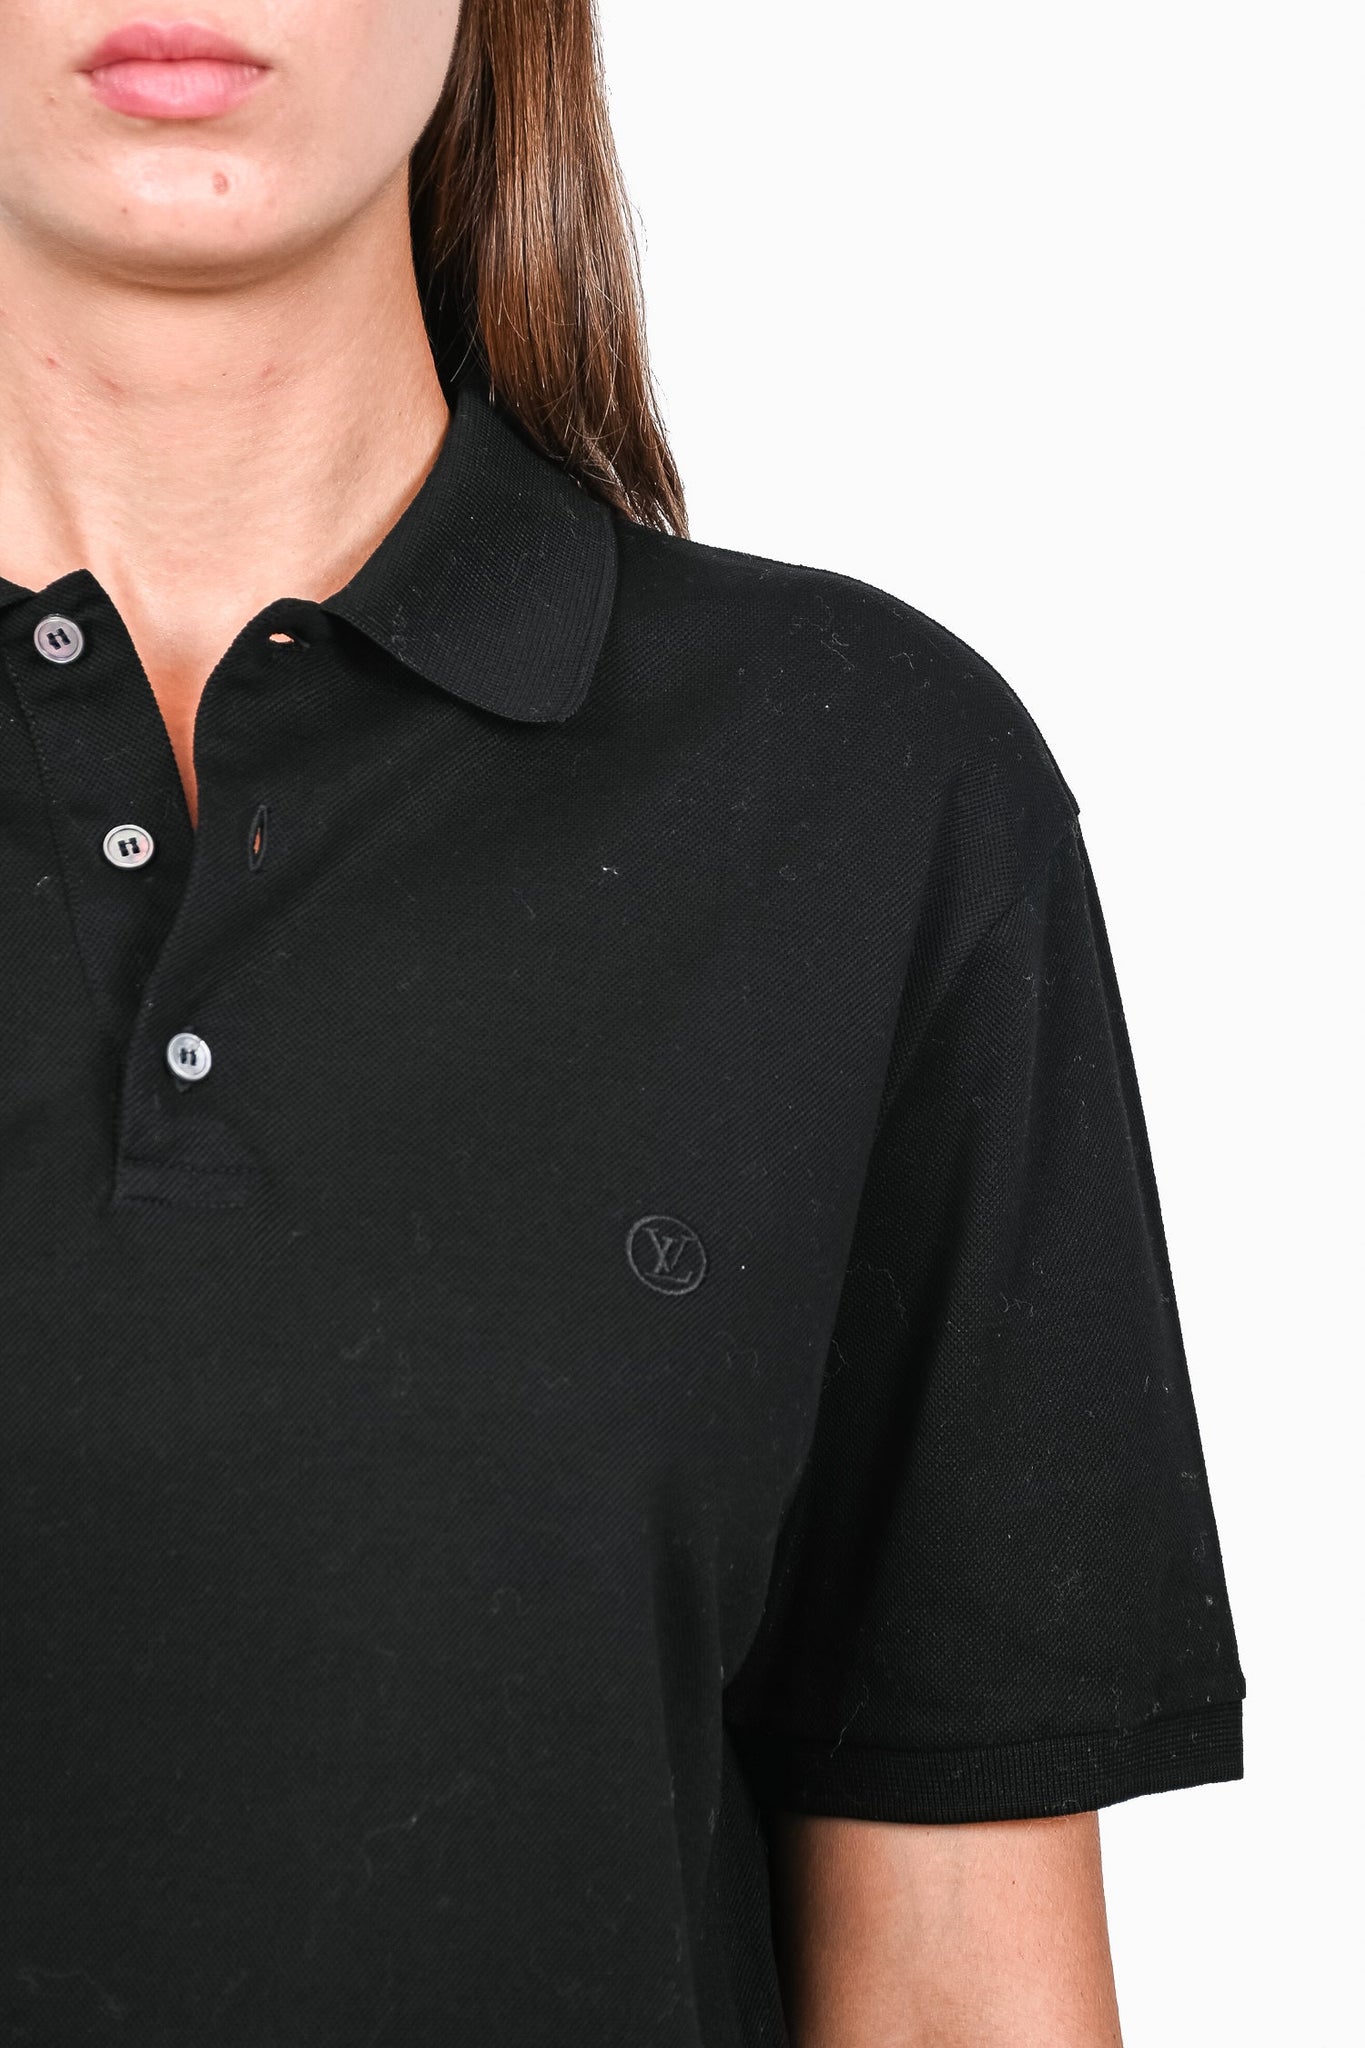 Lv Louis Vuitton Black Grey Embroidered Polo Shirts - Blinkenzo